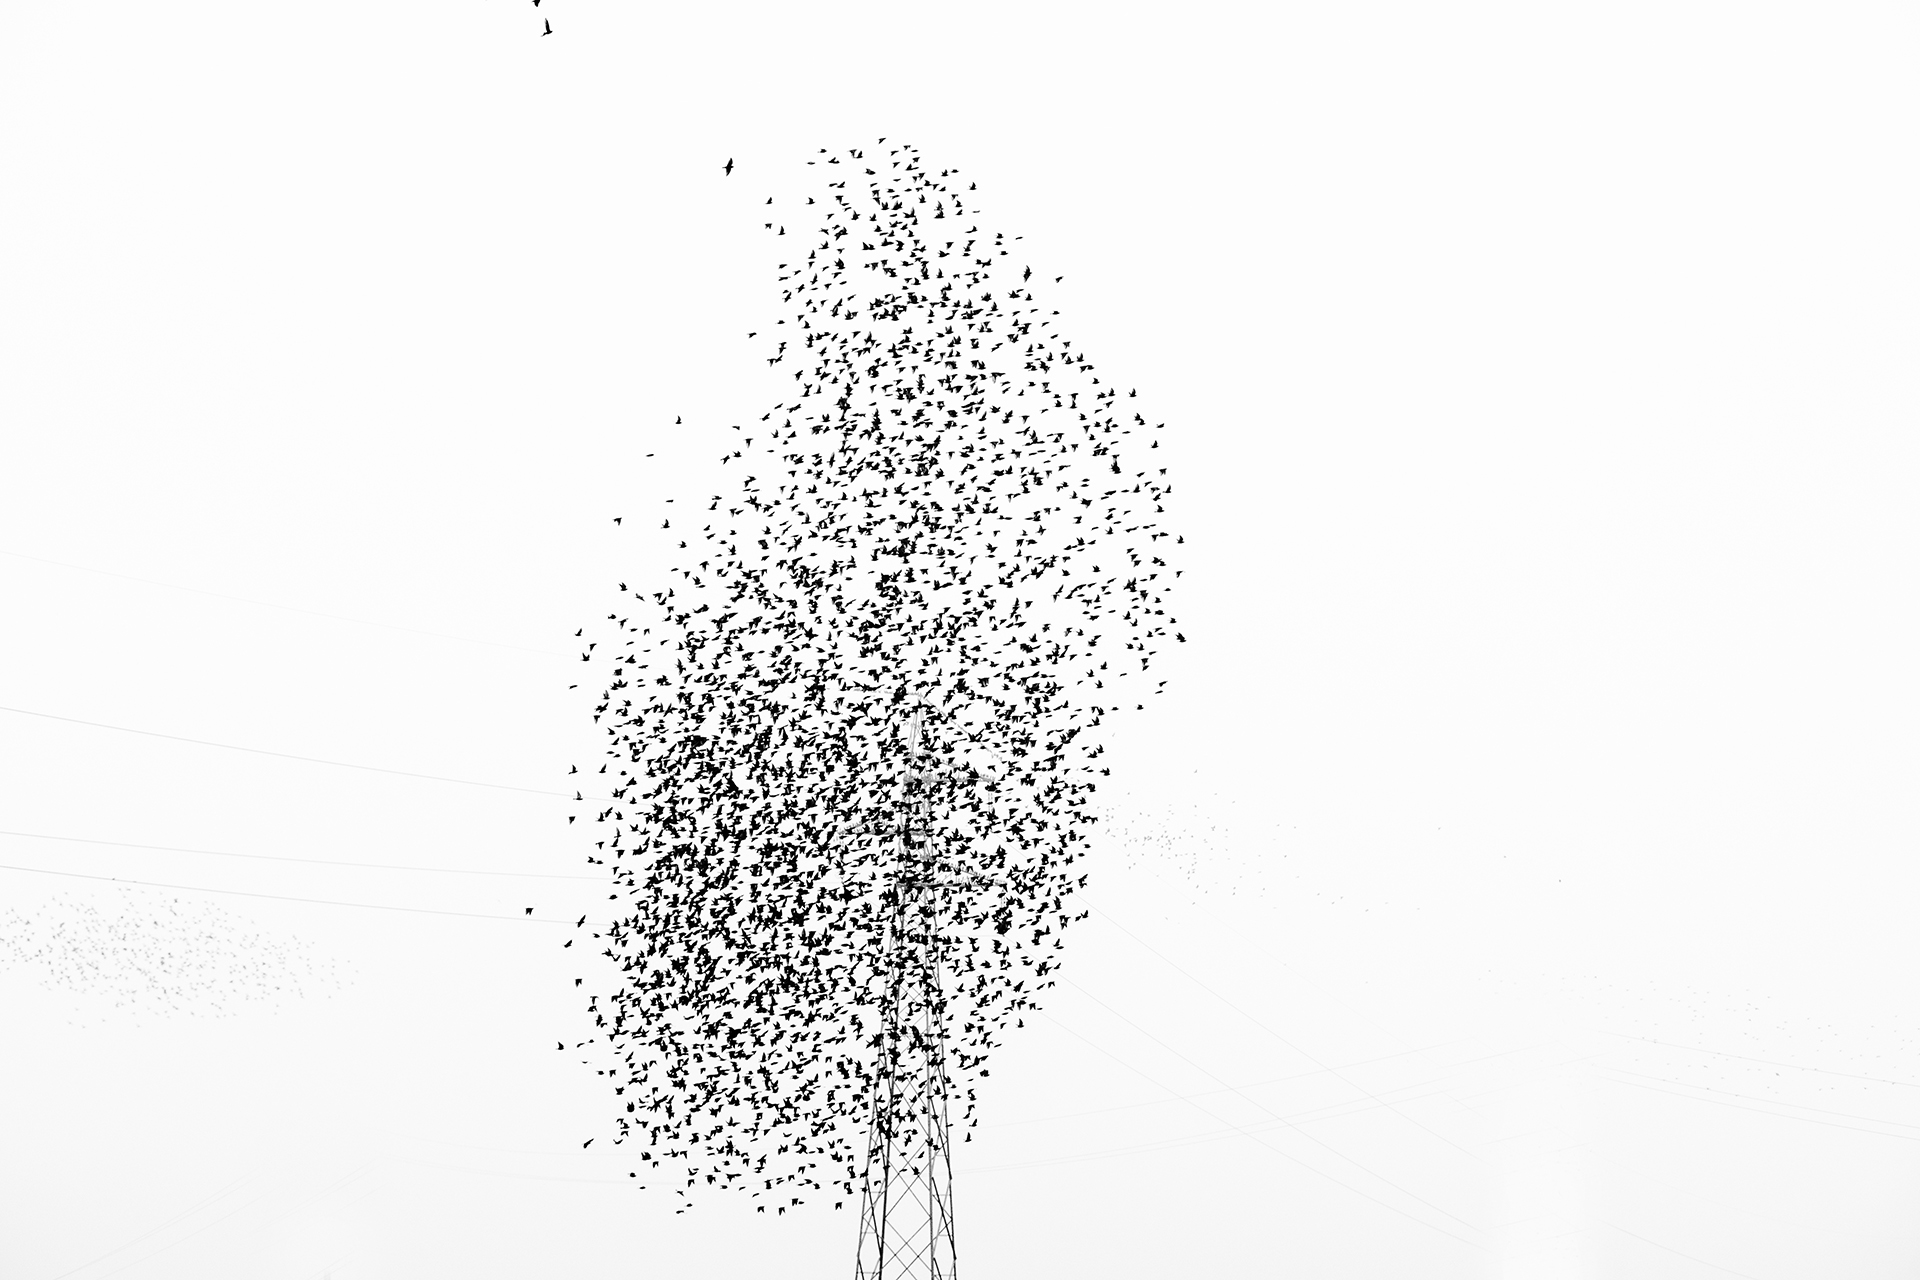 SECONDA
Foto n 25 RICCARDO COCCHI
 Una combinazione di casualit, illudono di vedere questo albero metallico, spettrale se vogliamo, lo stormo di uccelli, sembrano storni, in transito per il suo migrare, si raggruppano fino a formare una illusoria chiom